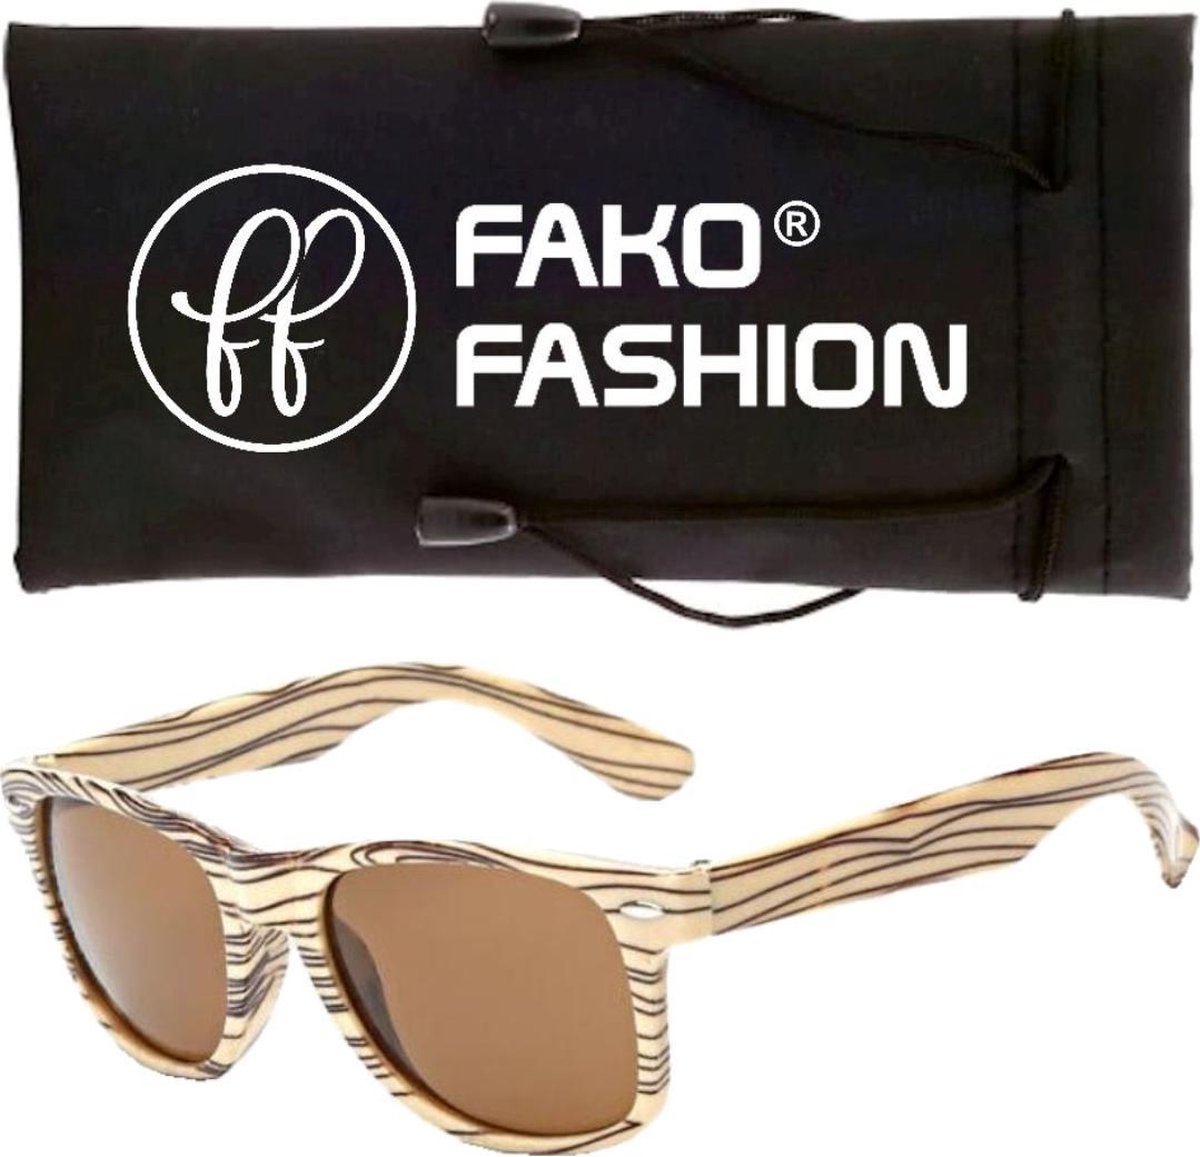 Fako Fashion® - Zonnebril - Houtlook - Beige/Beige